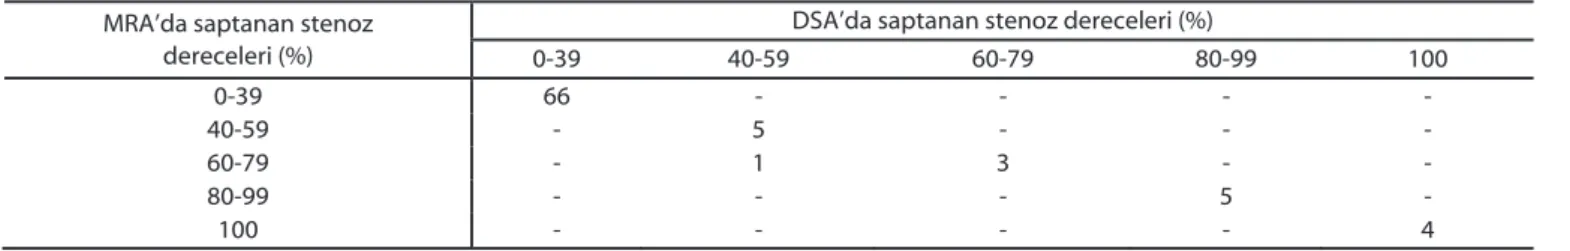 Tablo 3: Karotis arter patolojilerinin MRA ve DSA’ya göre da÷ÕlÕm ve uyumluluklarÕ 